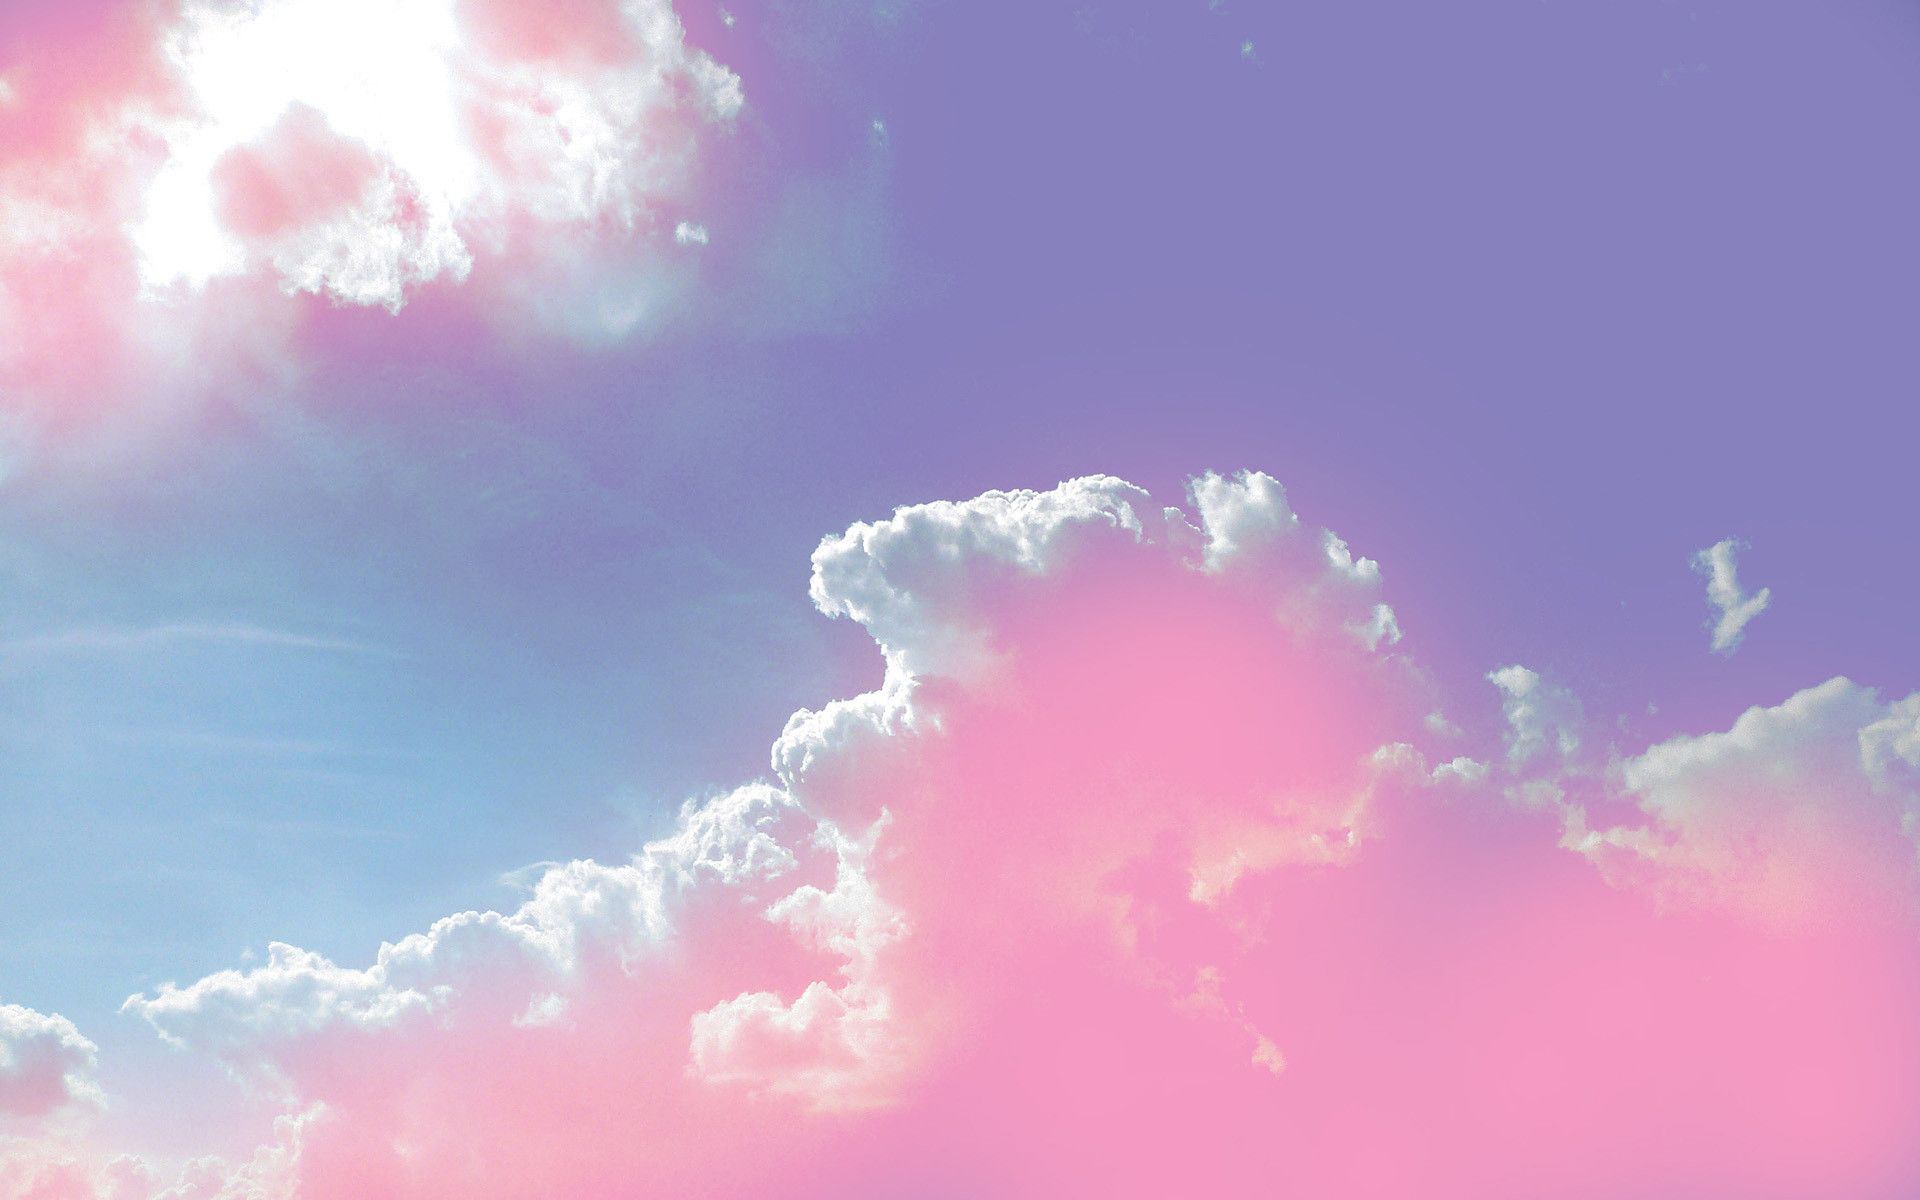 Hình nền mây hồng sẽ mang đến bầu không khí yên bình và lãng mạn. Bạn sẽ cảm thấy như đang bay trên những đám mây hồng xinh đẹp, tận hưởng sự tĩnh lặng trong cuộc sống. Dễ dàng tải xuống và trang trí cho điện thoại di động hoặc máy tính để bàn của bạn với những bức ảnh này.